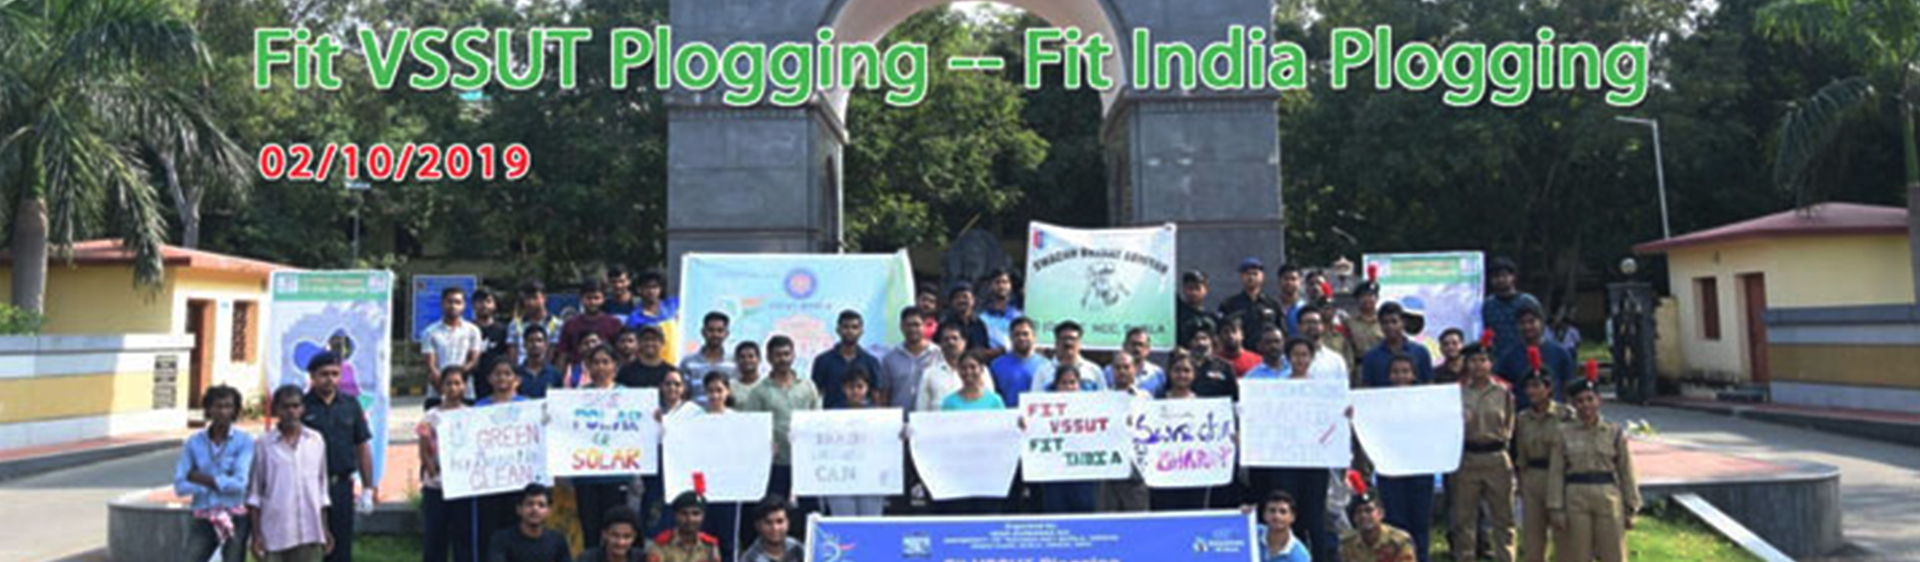 Fit VSSUT Plogging - - Fit India